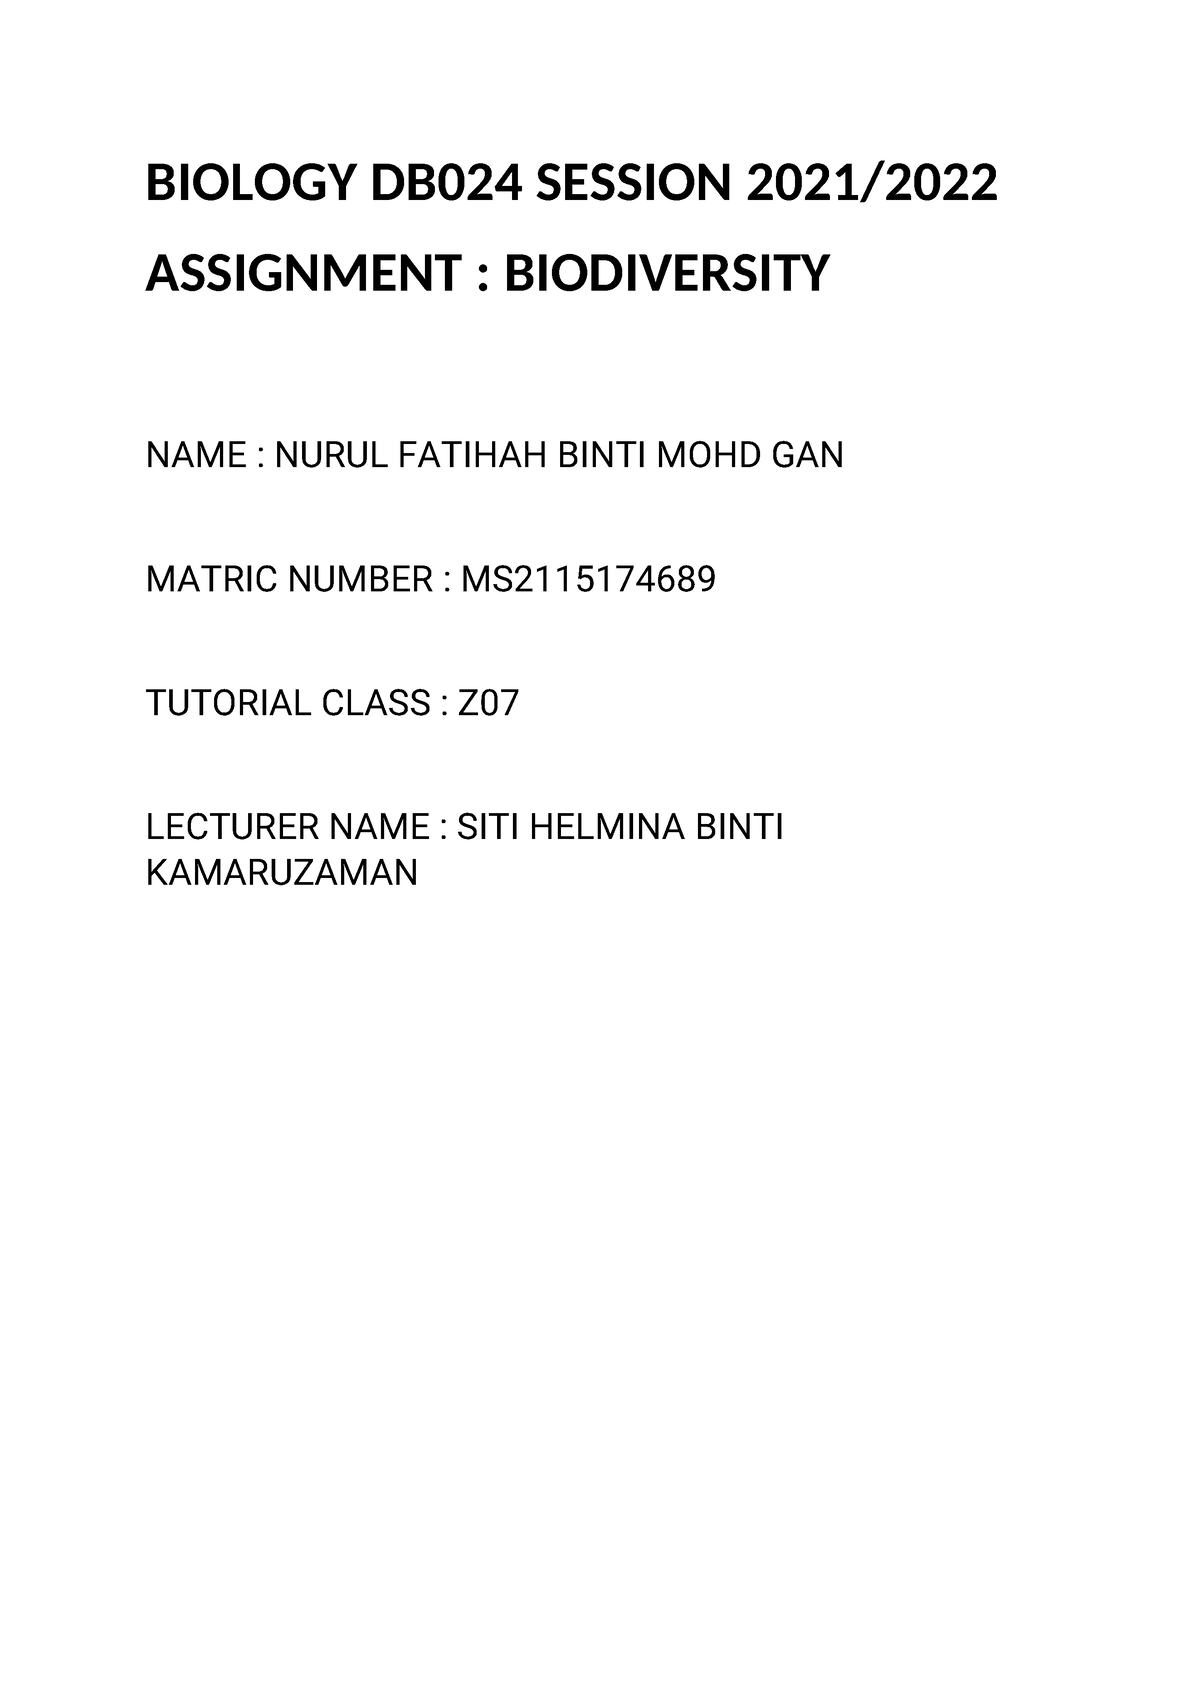 assignment biology sb025